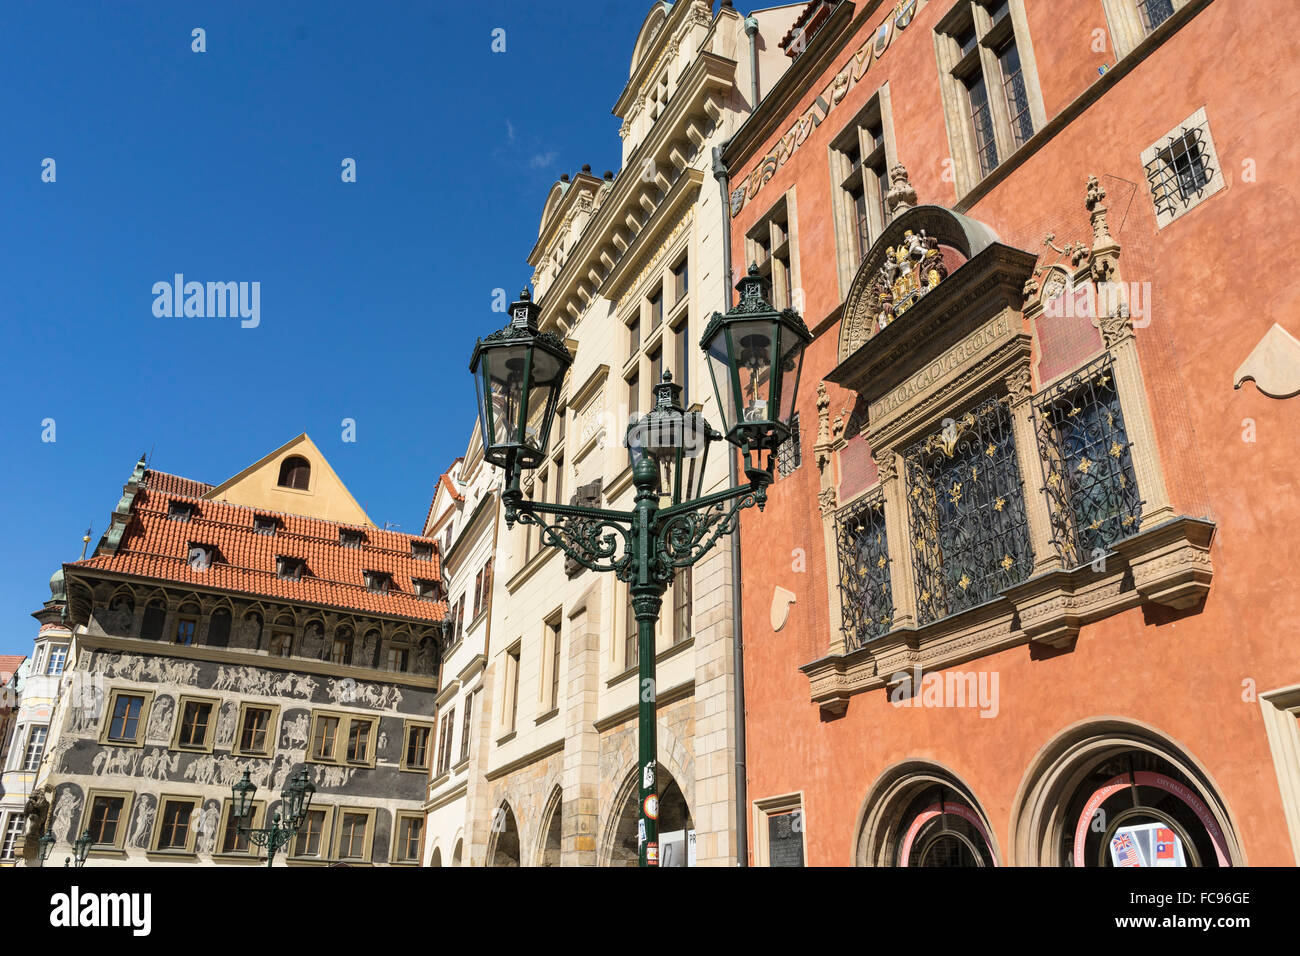 UNESCO-Weltkulturerbe, Altstädter Ring, Prag, Tschechische Republik, Europa Stockfoto